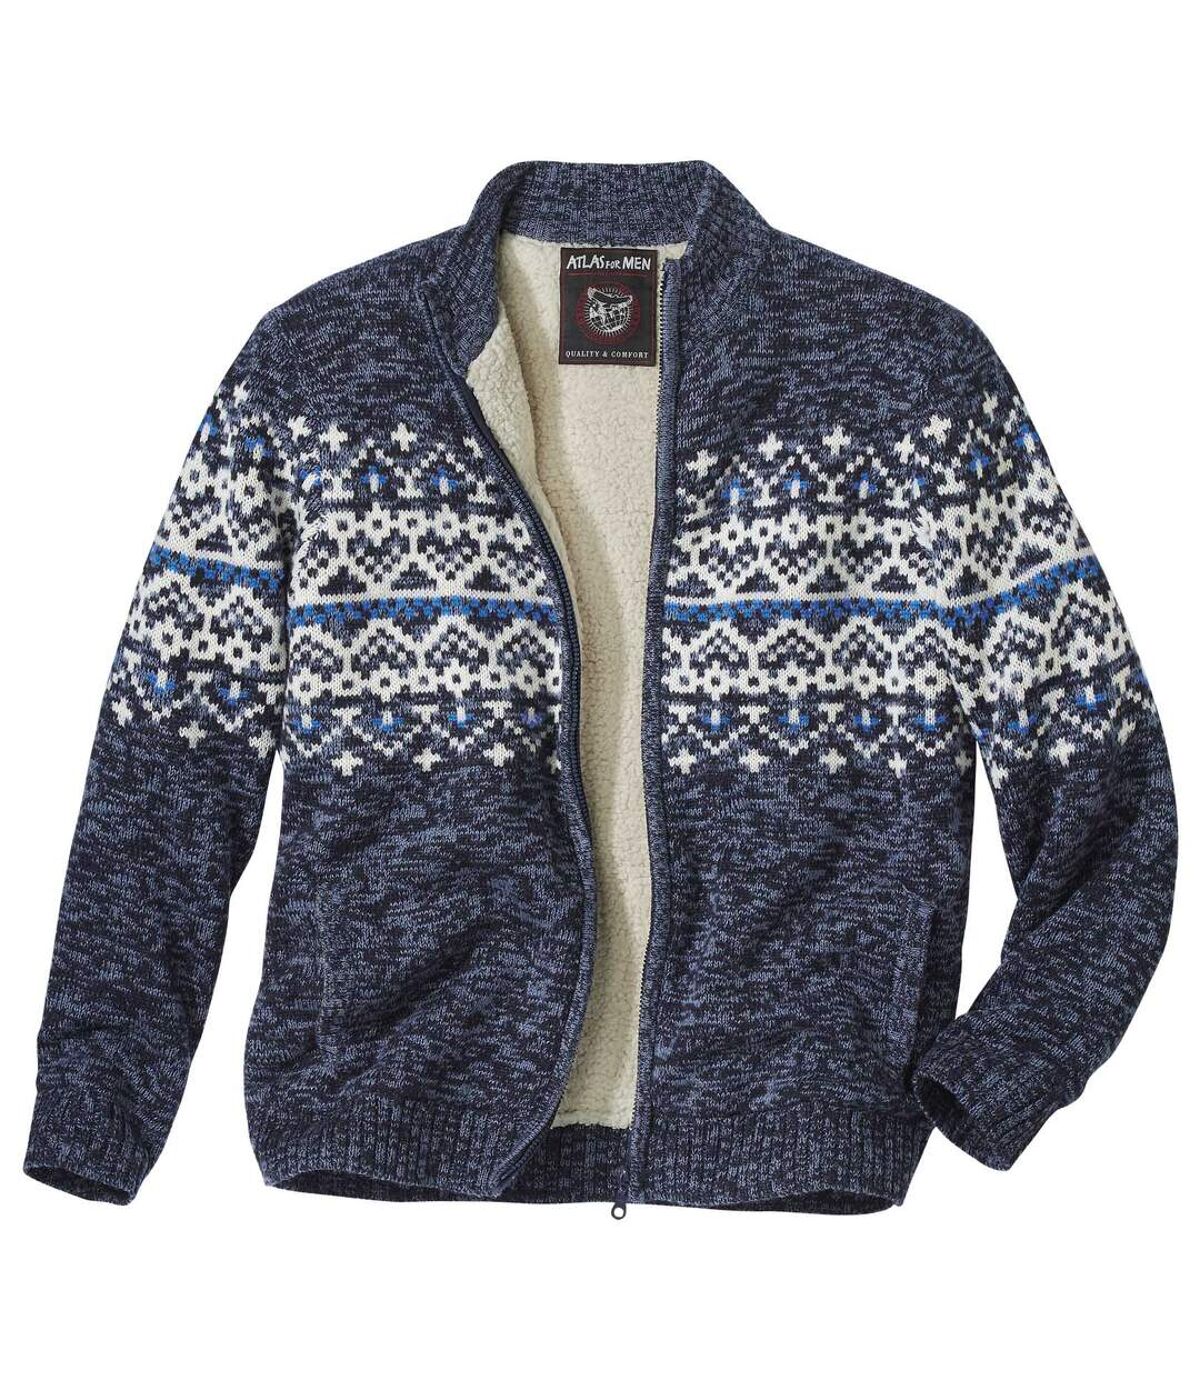 Pletený svetr s žakárovým vzorem zateplený umělým beránkem Atlas For Men